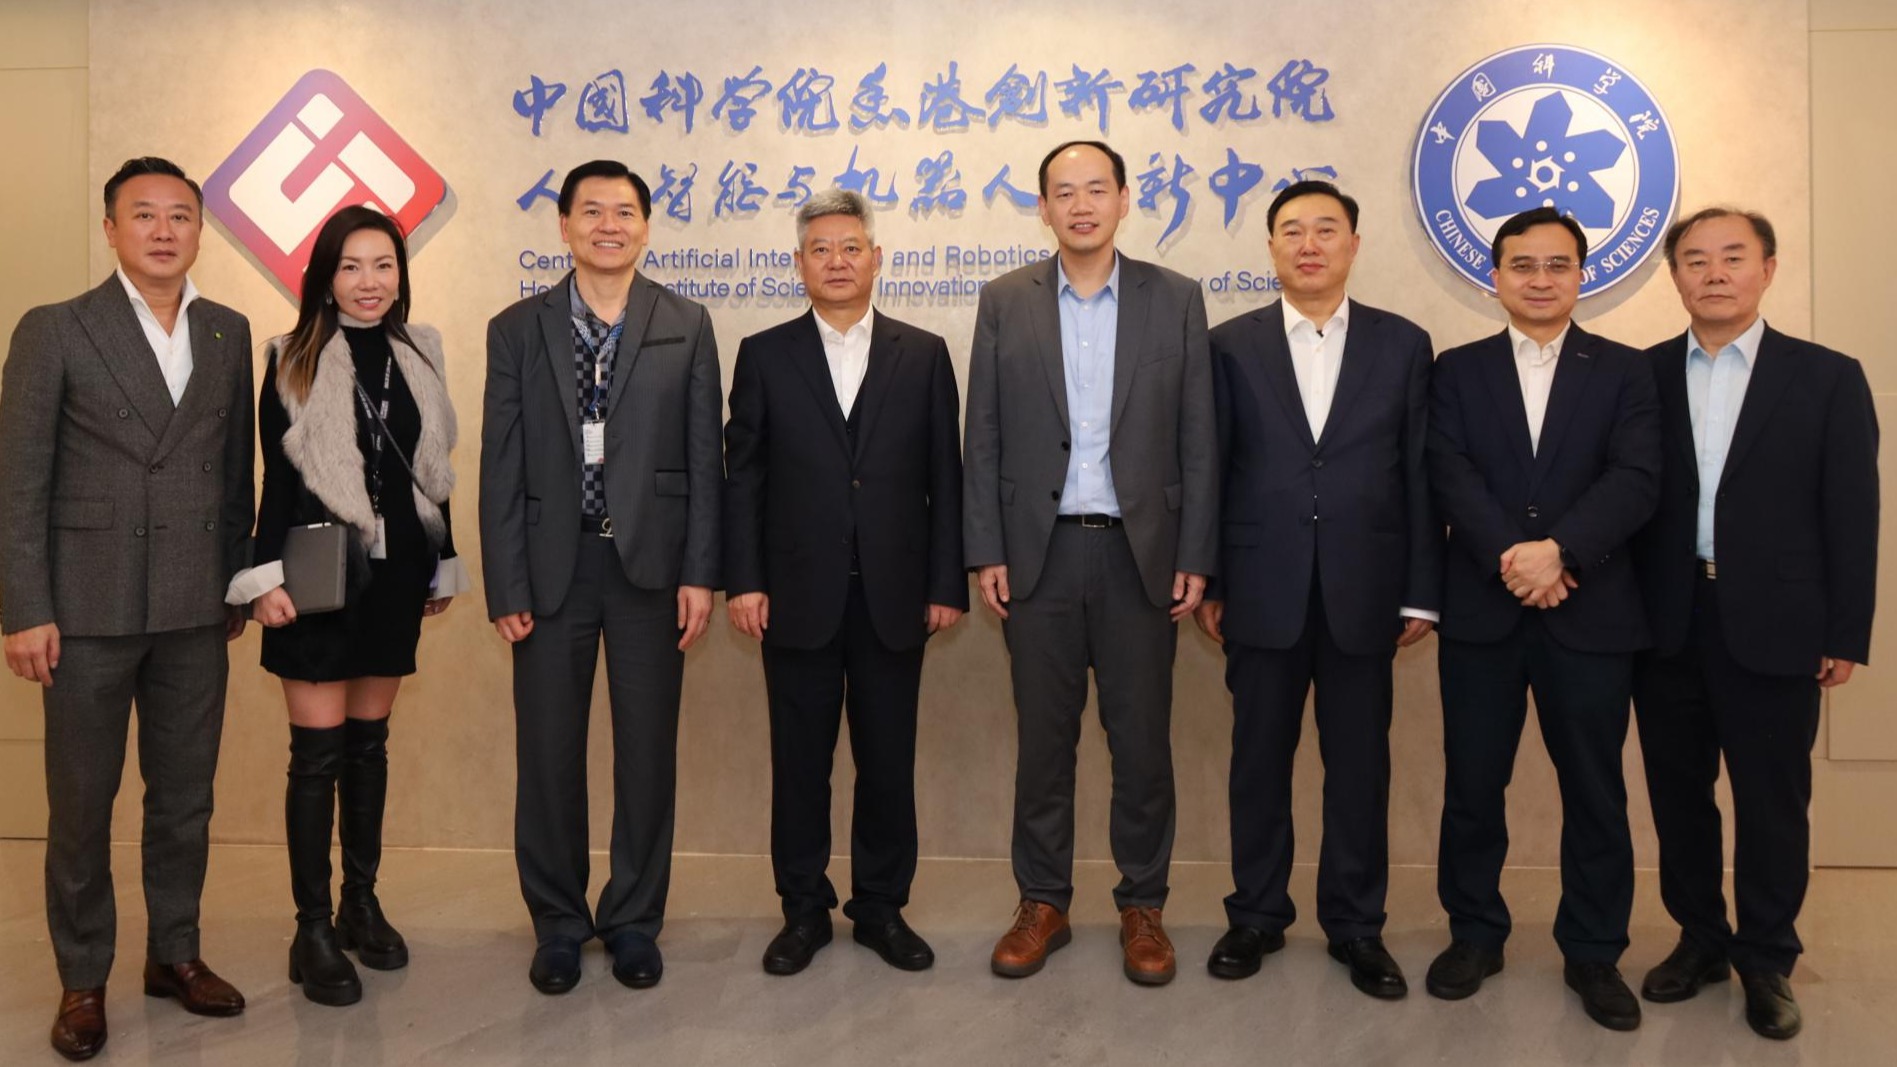 陕西省政协主席徐新荣一行来访中国科学院香港创新院AI中心